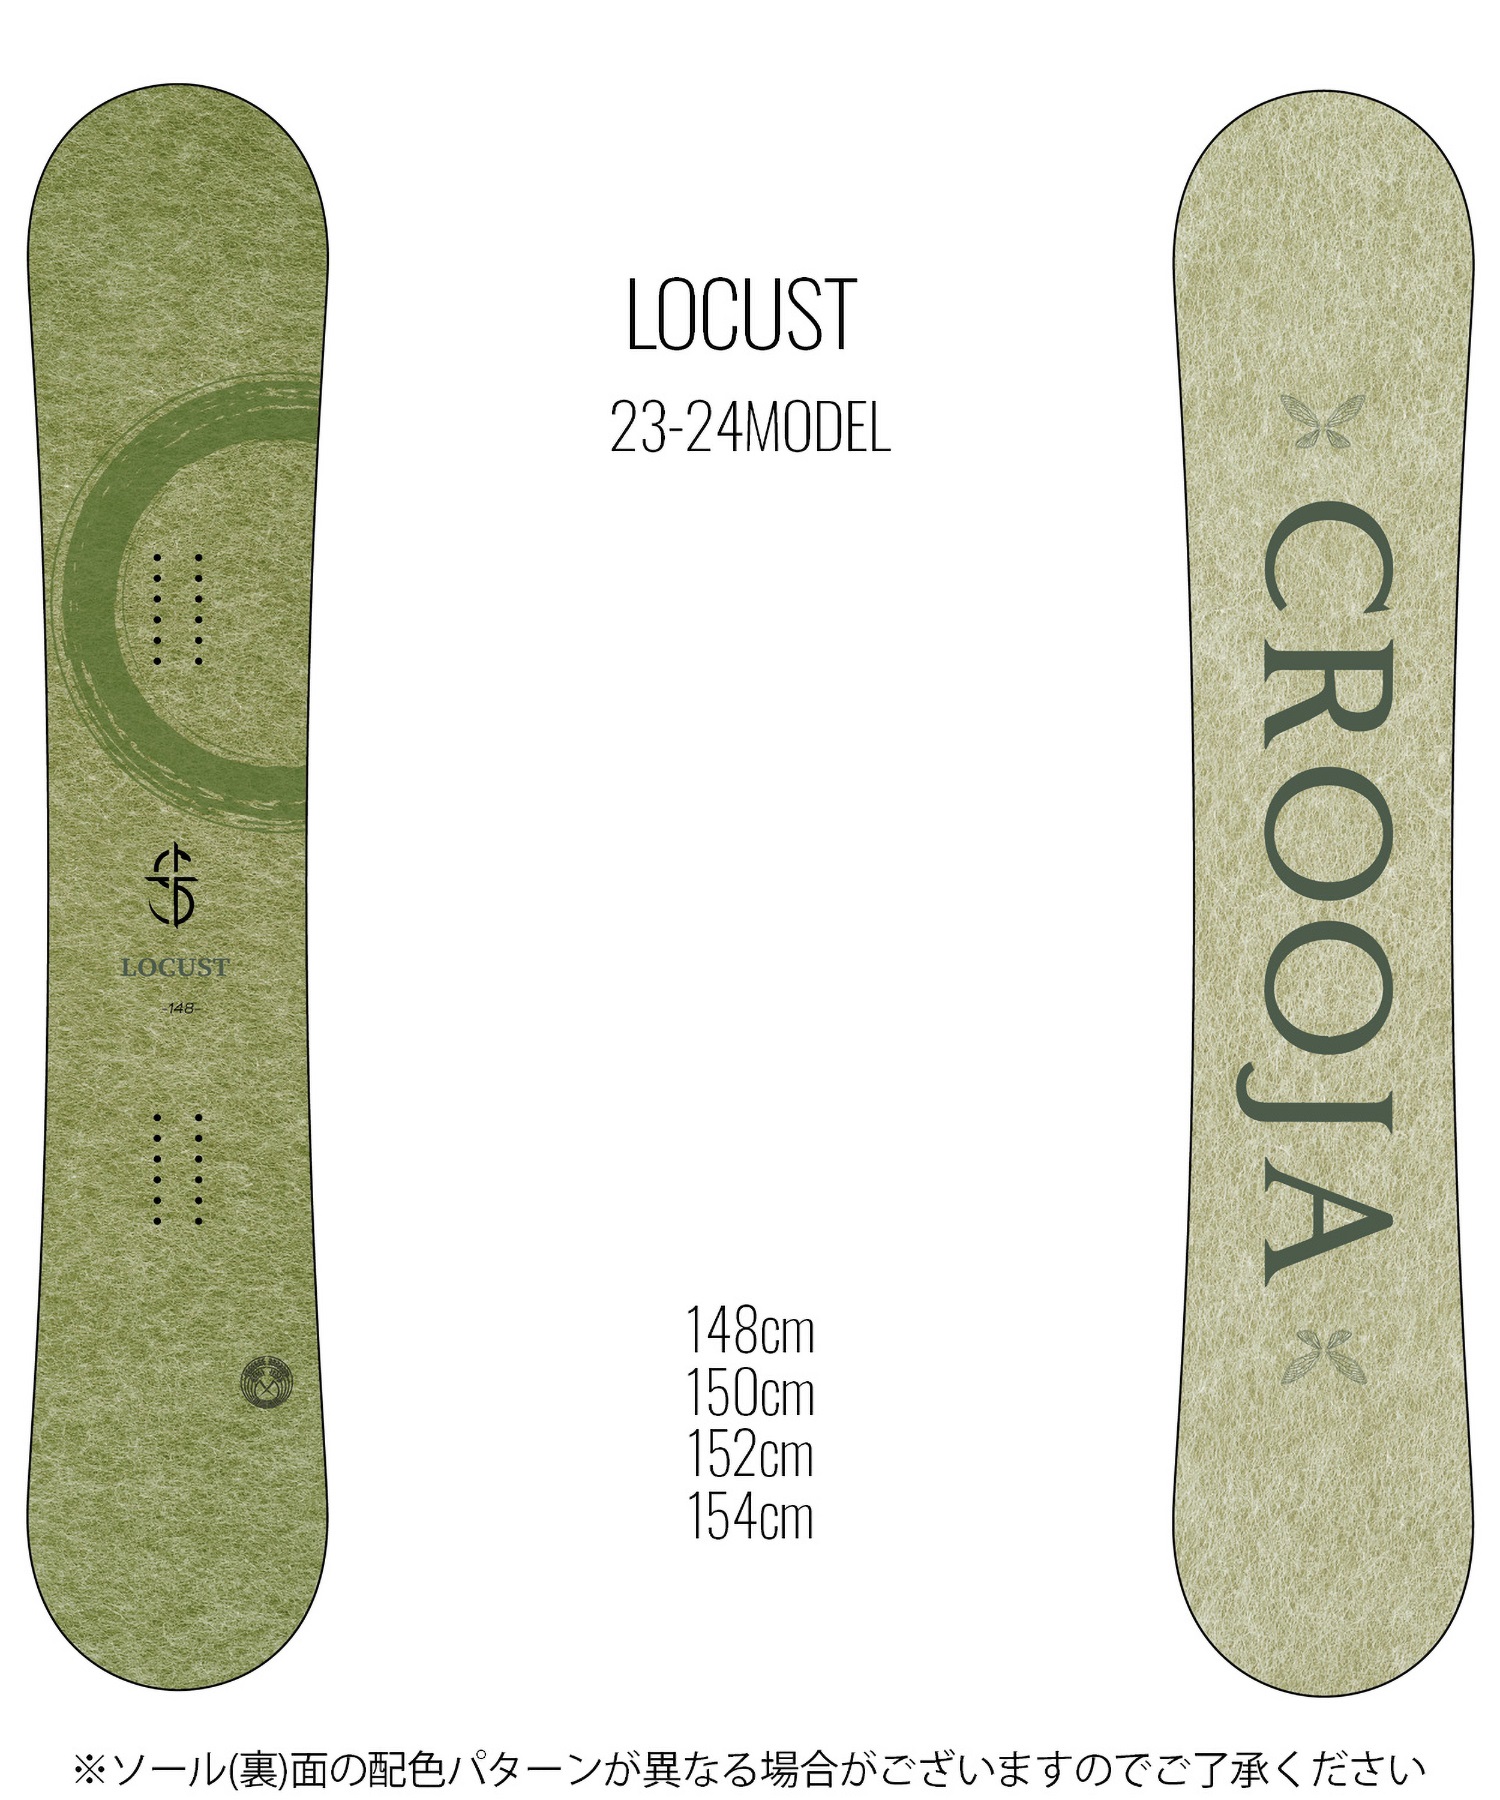 スノーボード 板 メンズ CROOJA クロージャ LOCUST 23-24モデル